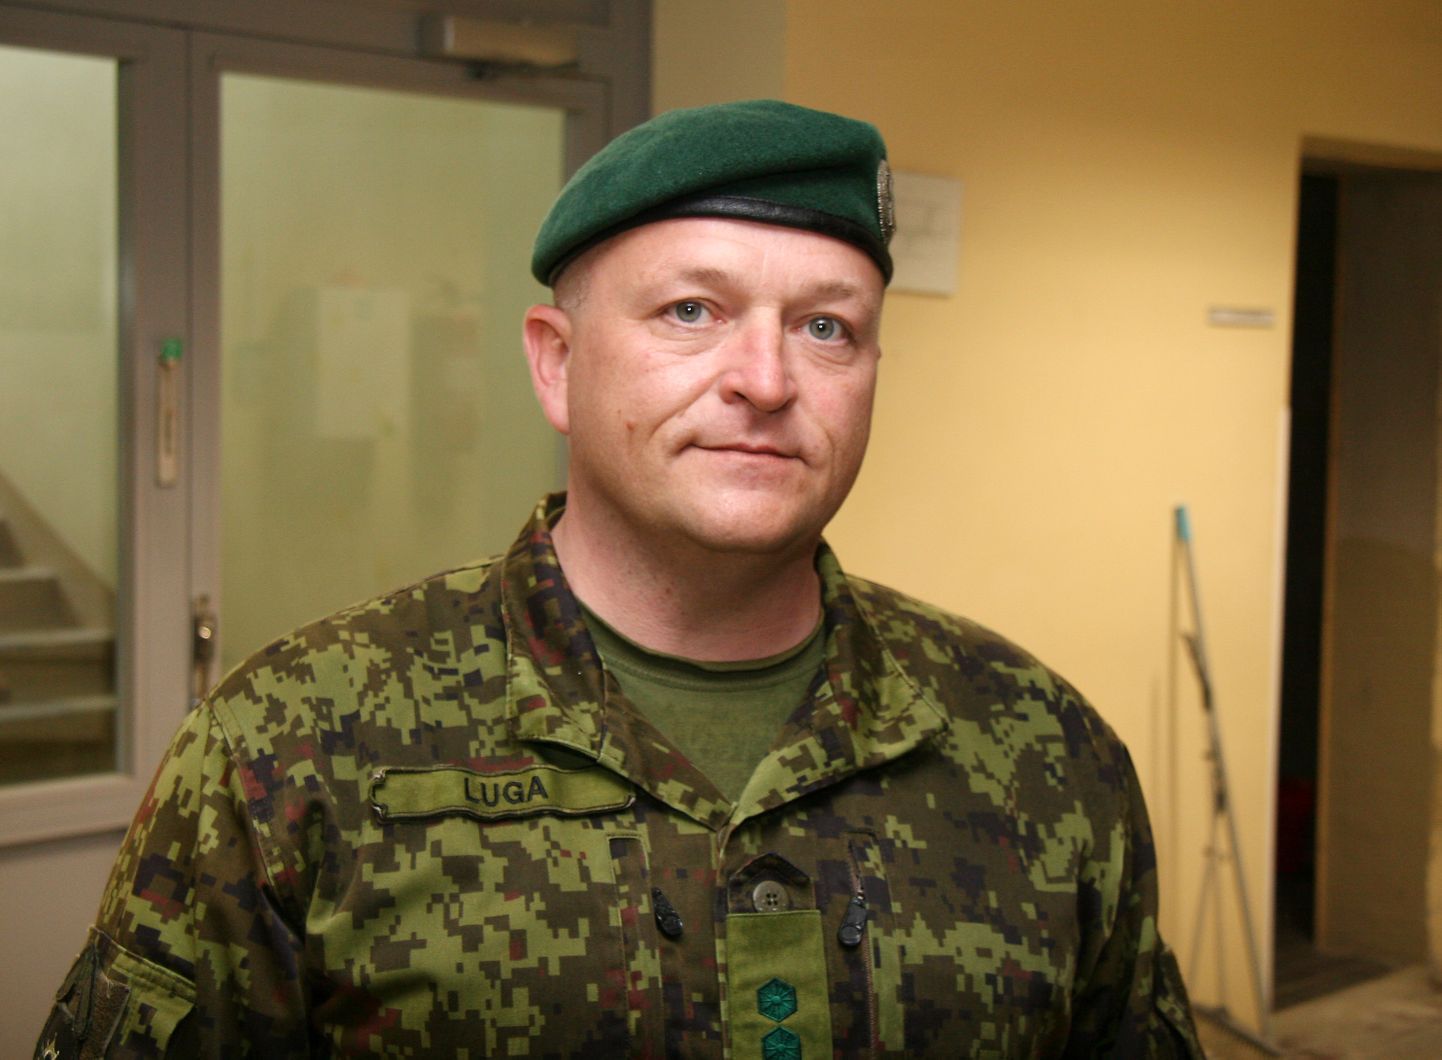 Подполковник Тарво Луга признался, что командование Вируским батальоном - это большая честь, но и очень большая ответственность, и его ждет много работы.